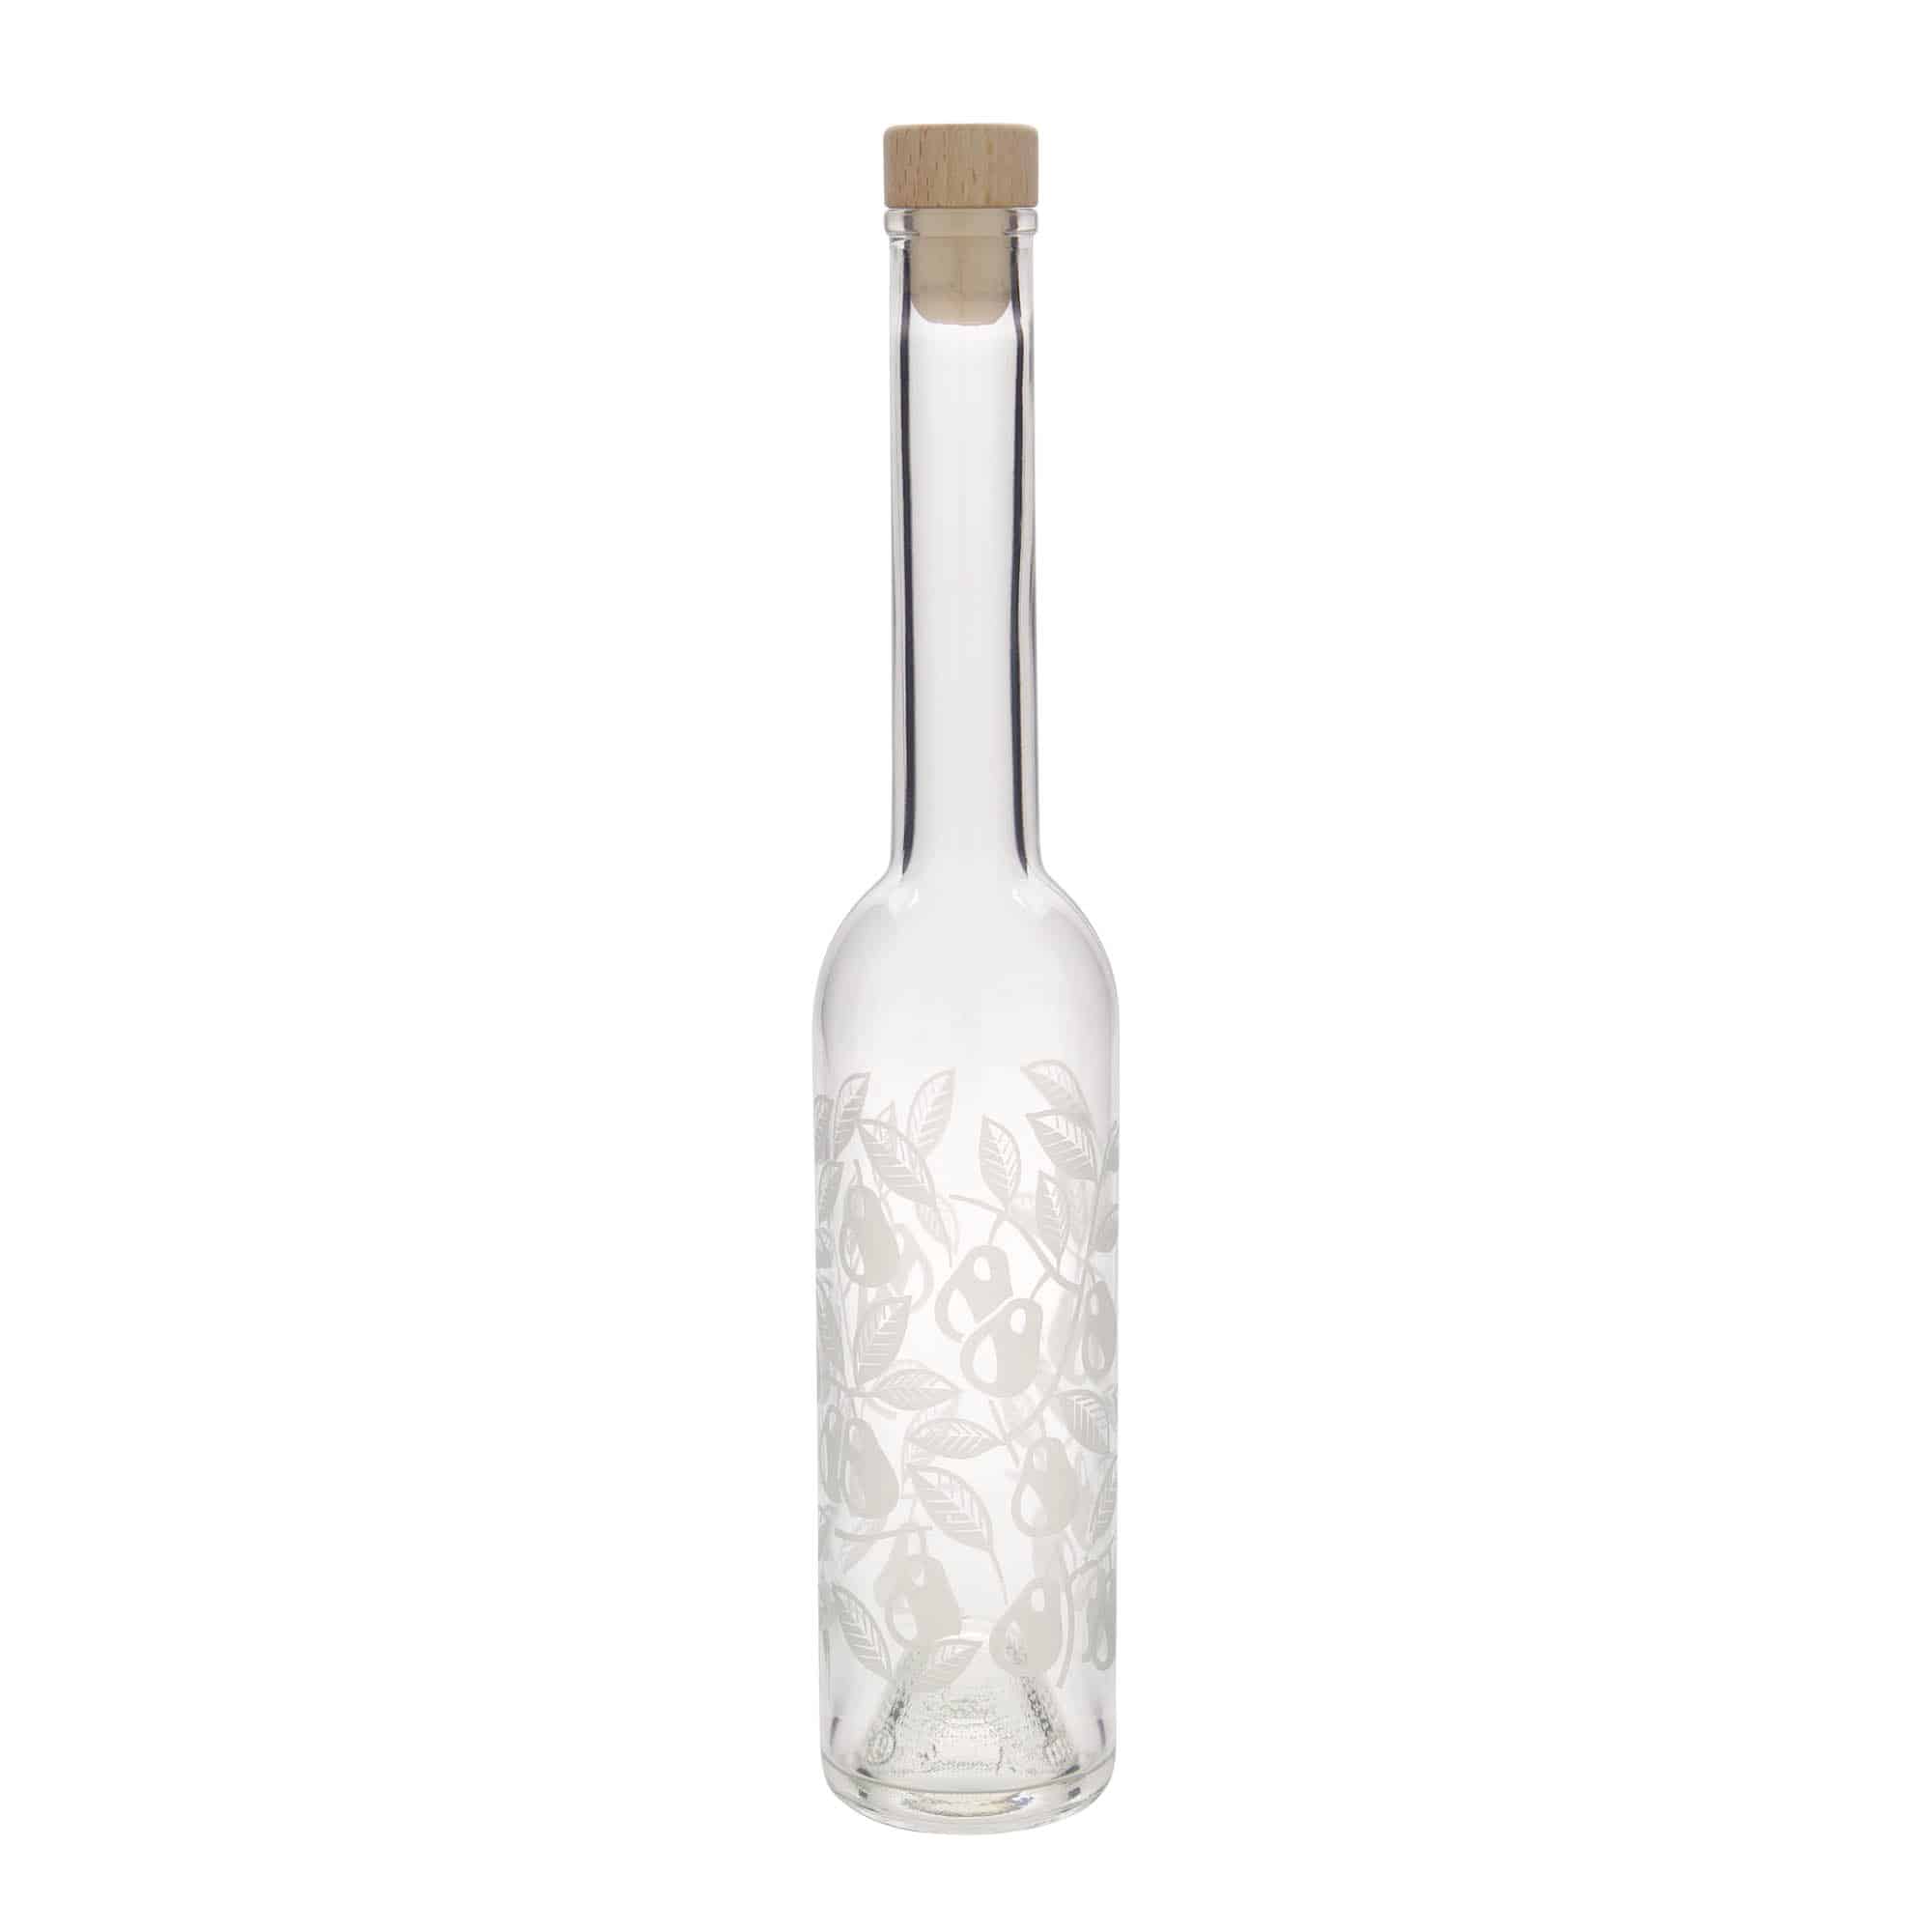 350 ml glass bottle 'Opera', print: pears, closure: cork